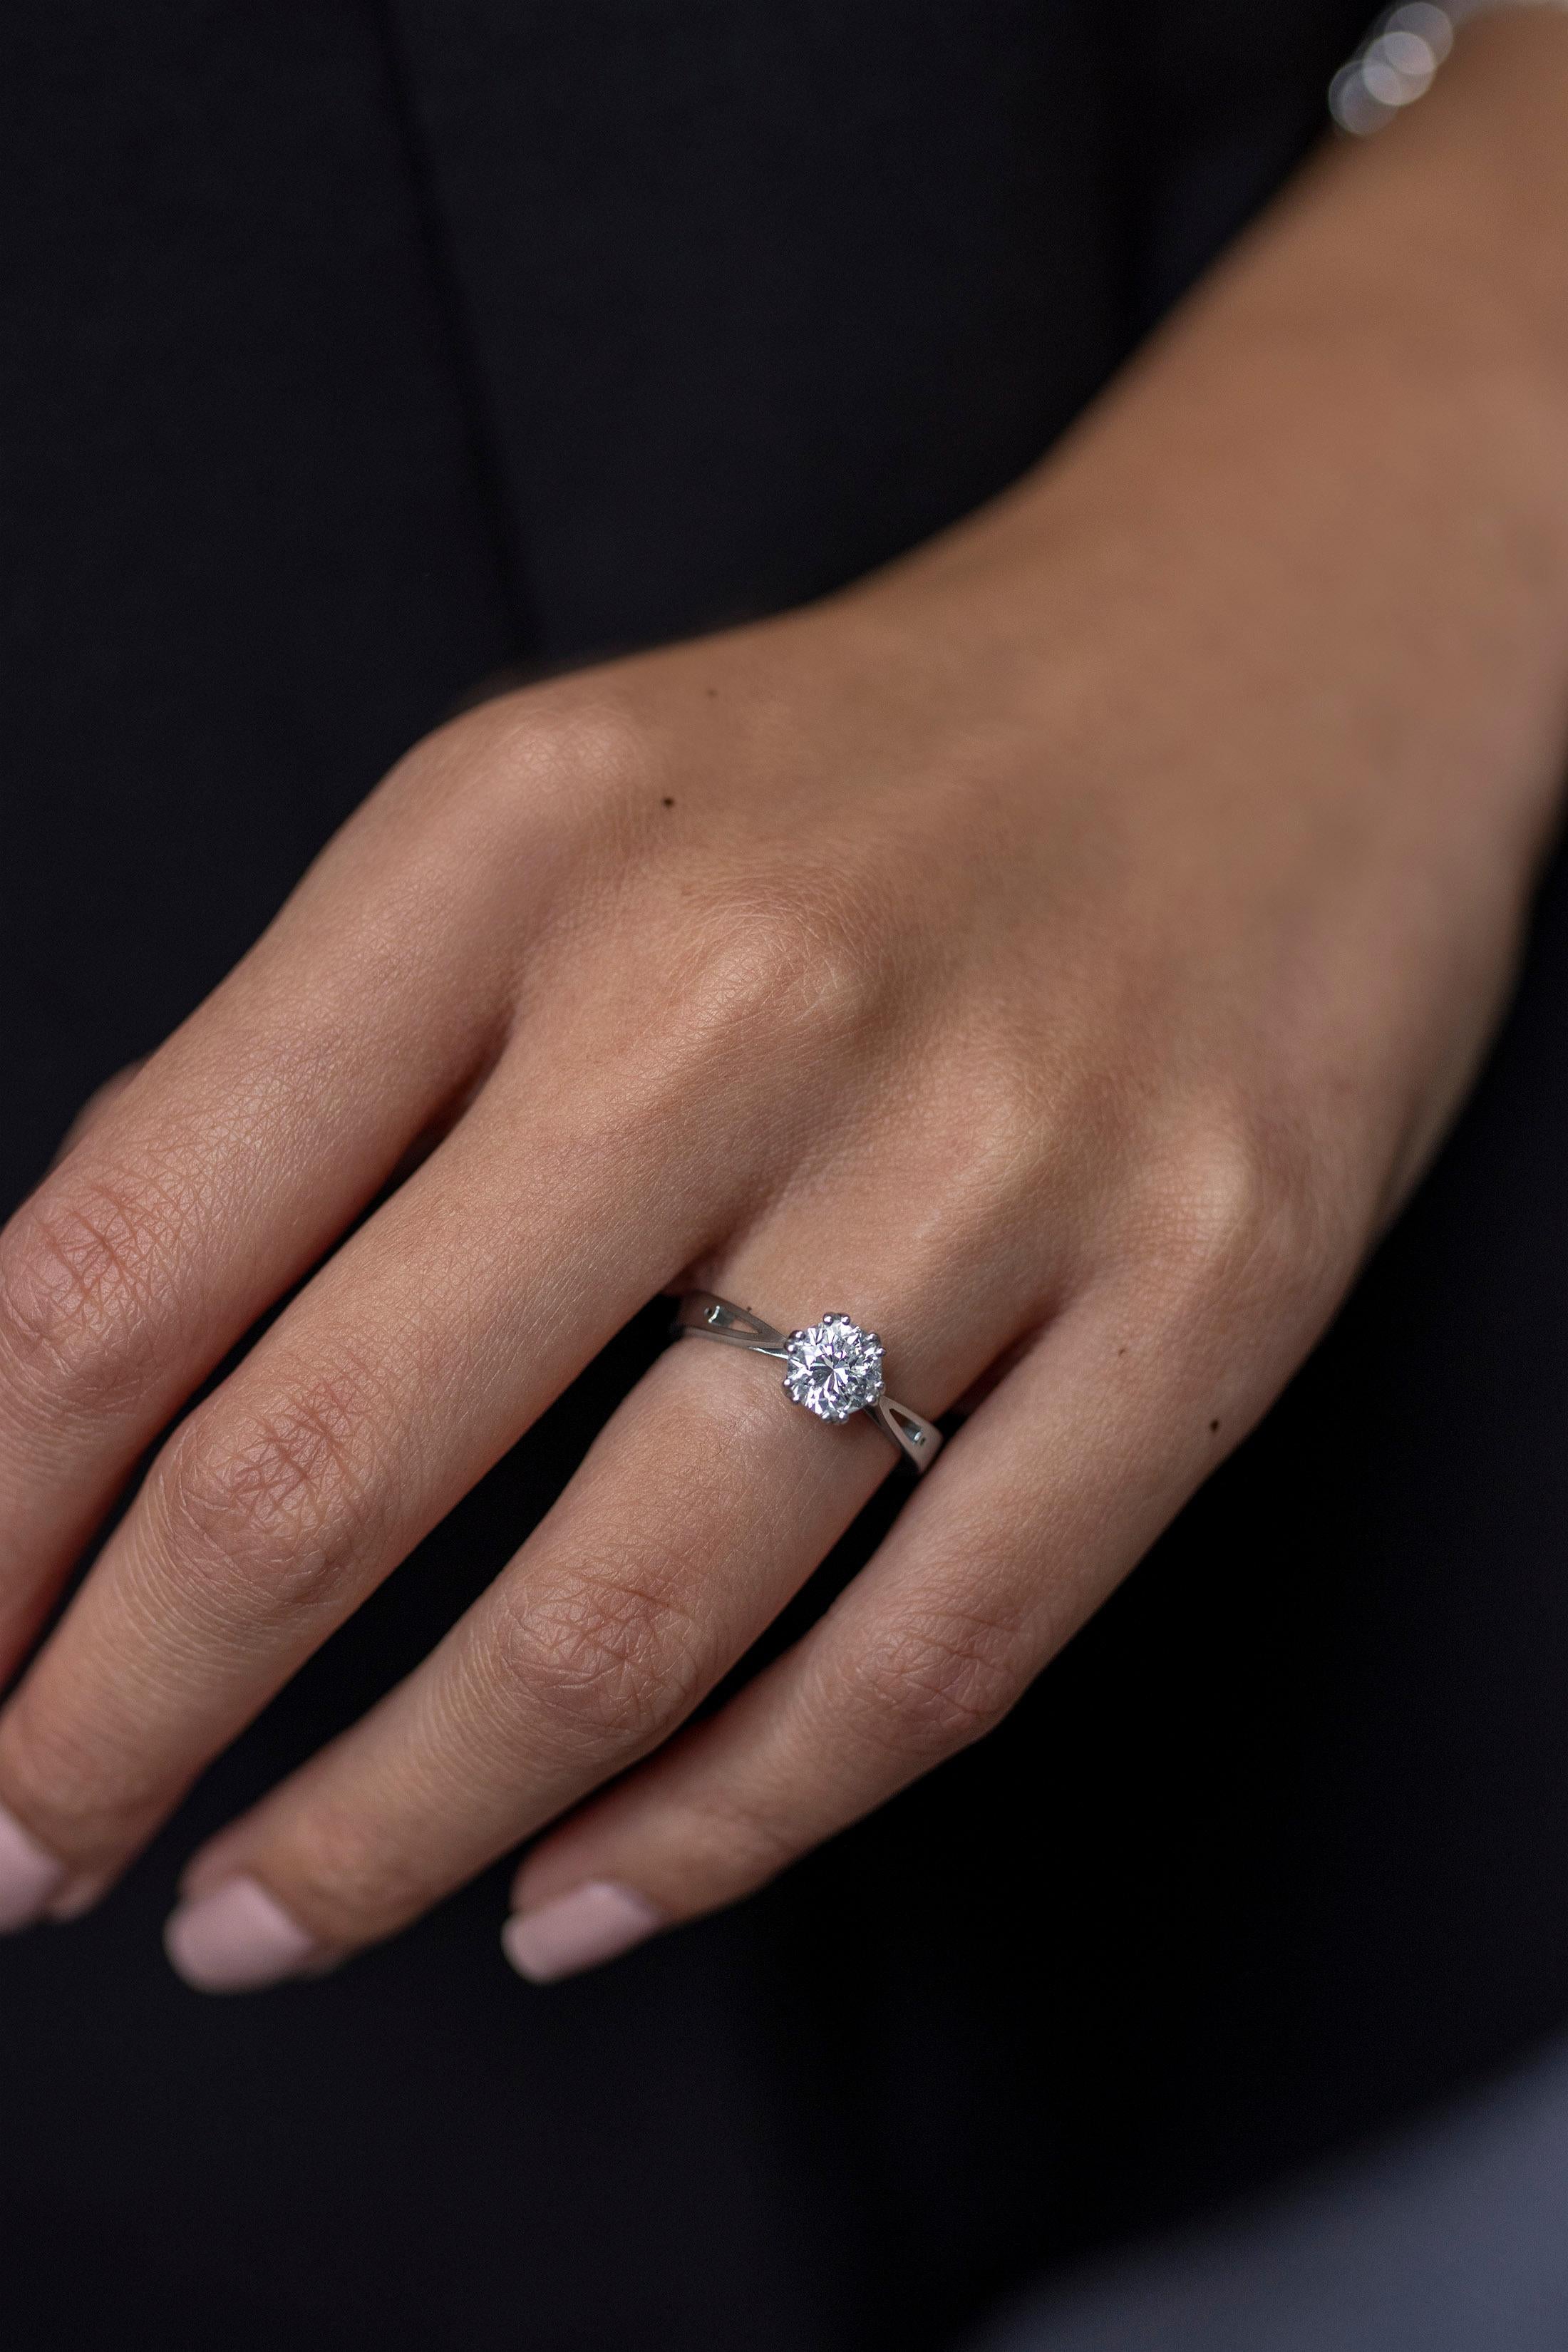 12 carat solitaire diamond ring